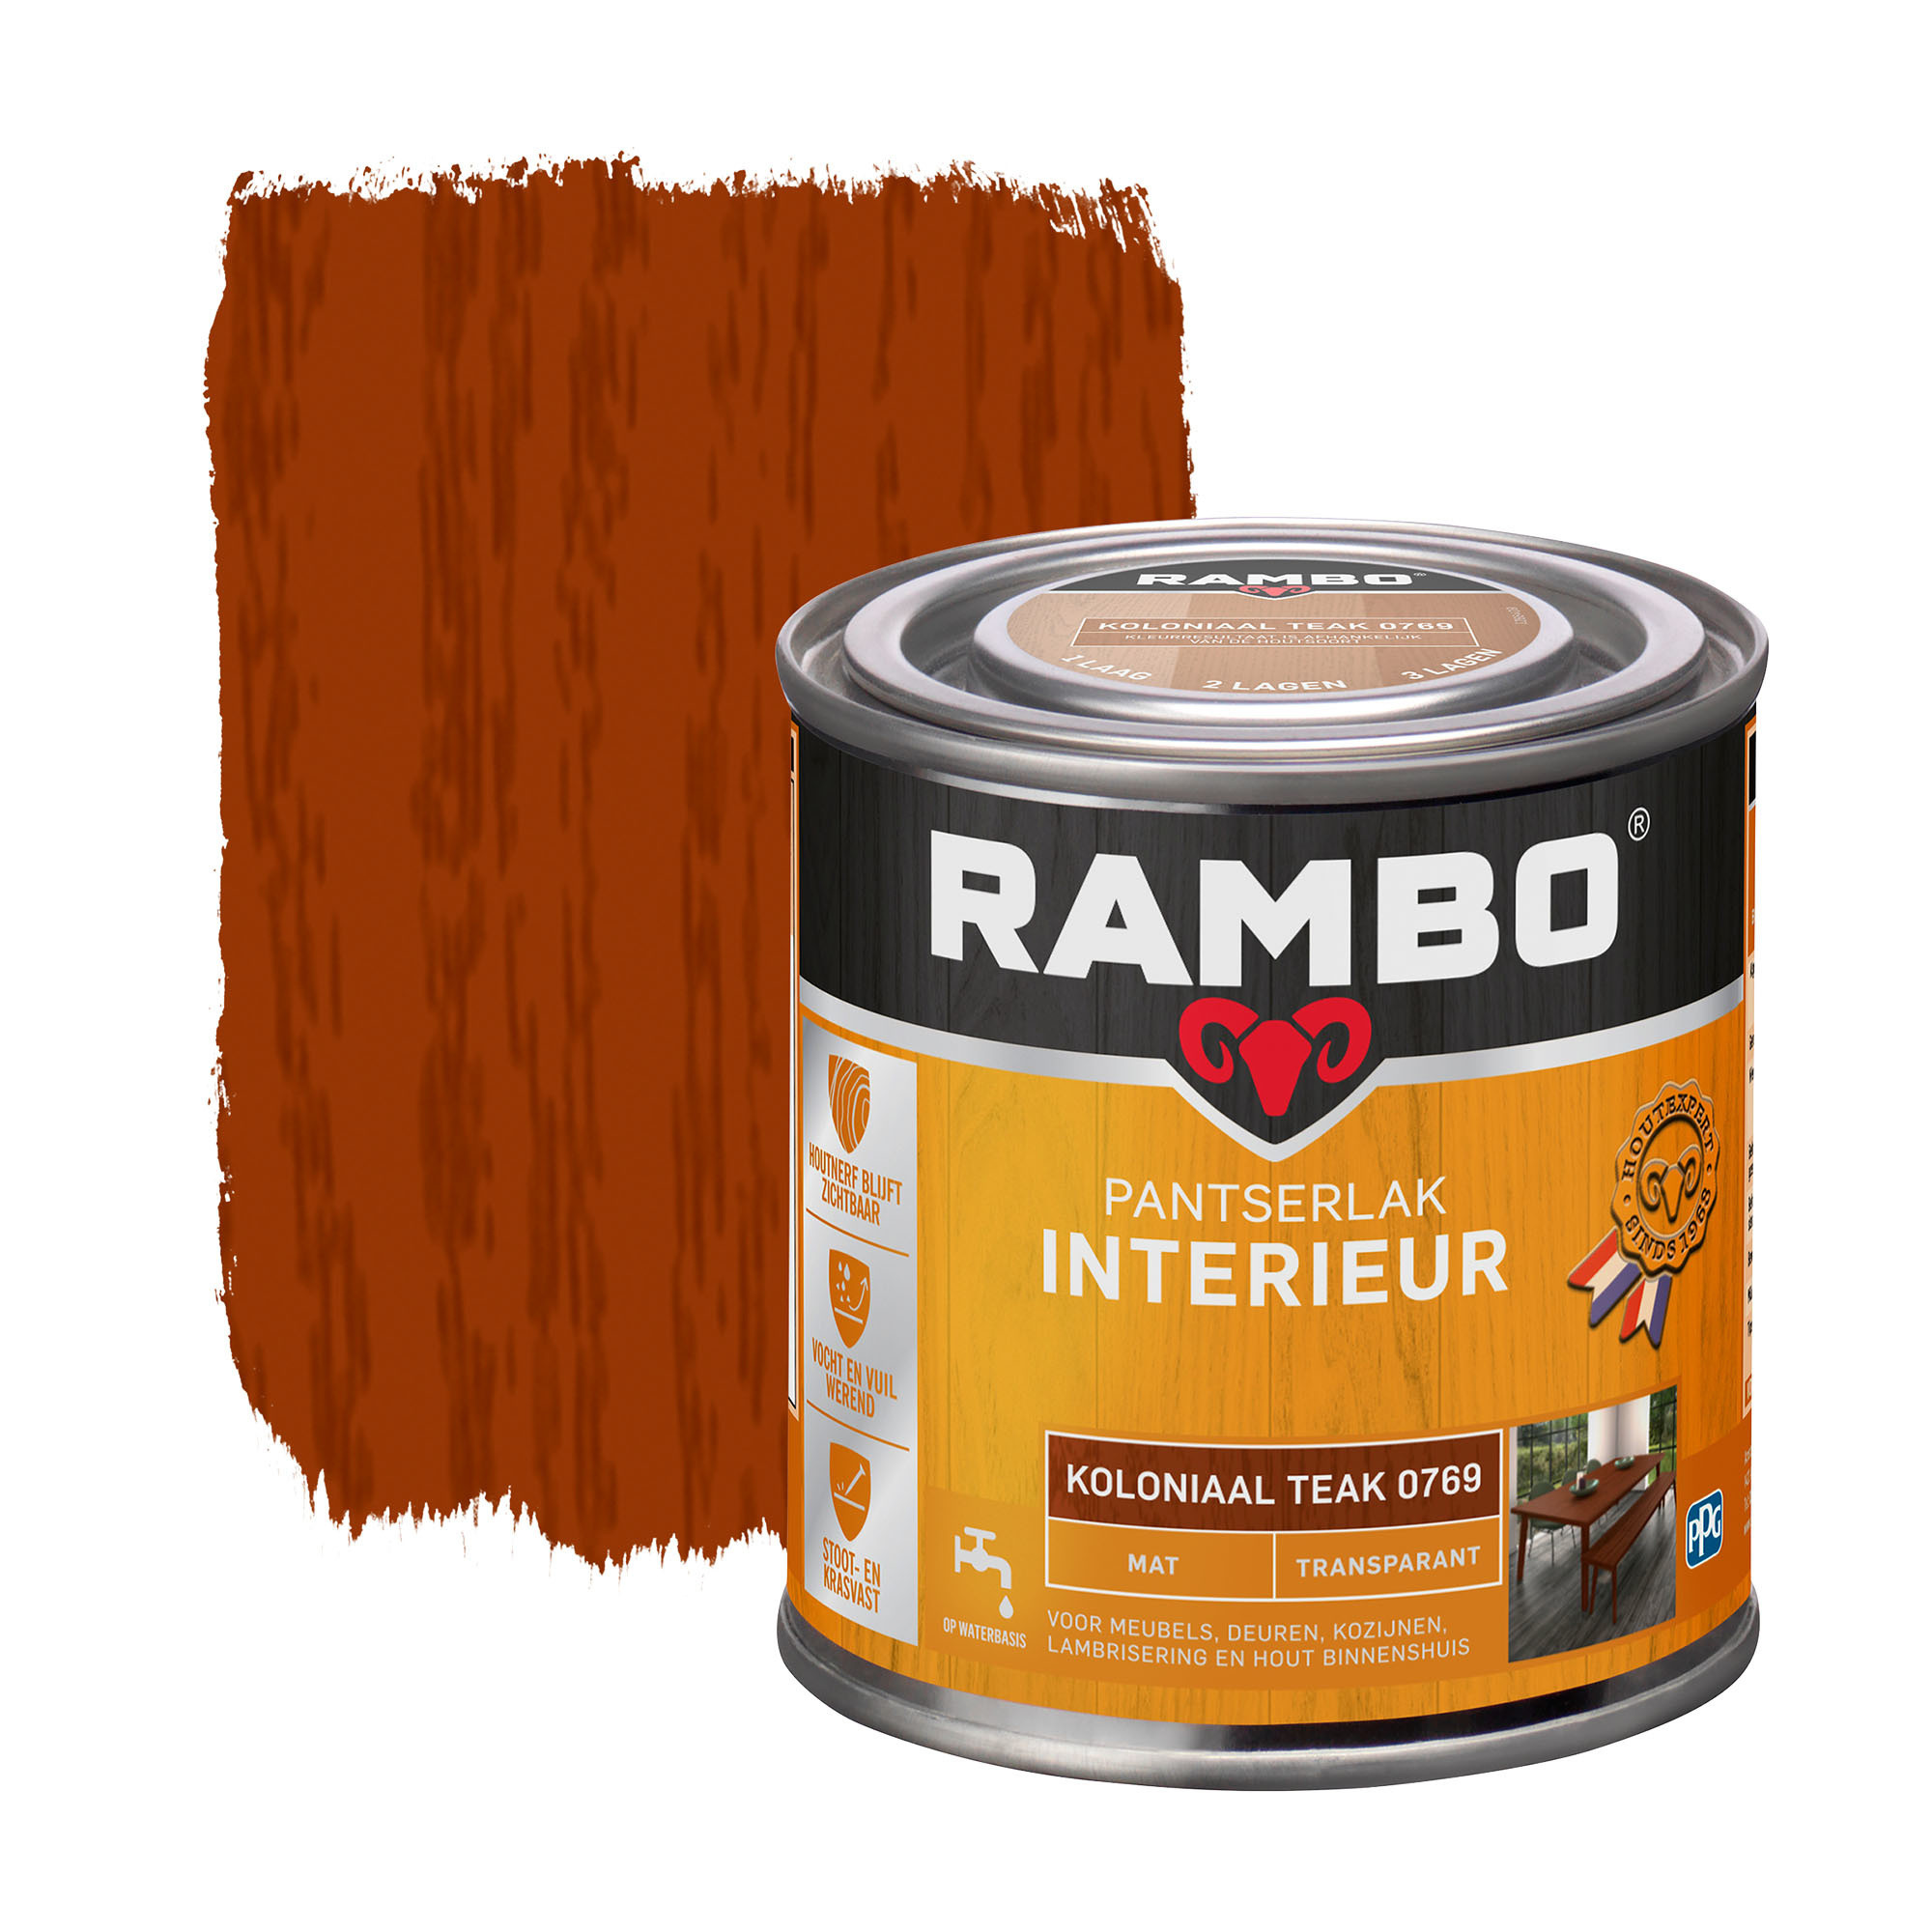 Rambo Pantserlak Interieur Transparant Mat - Koloniaal Teak